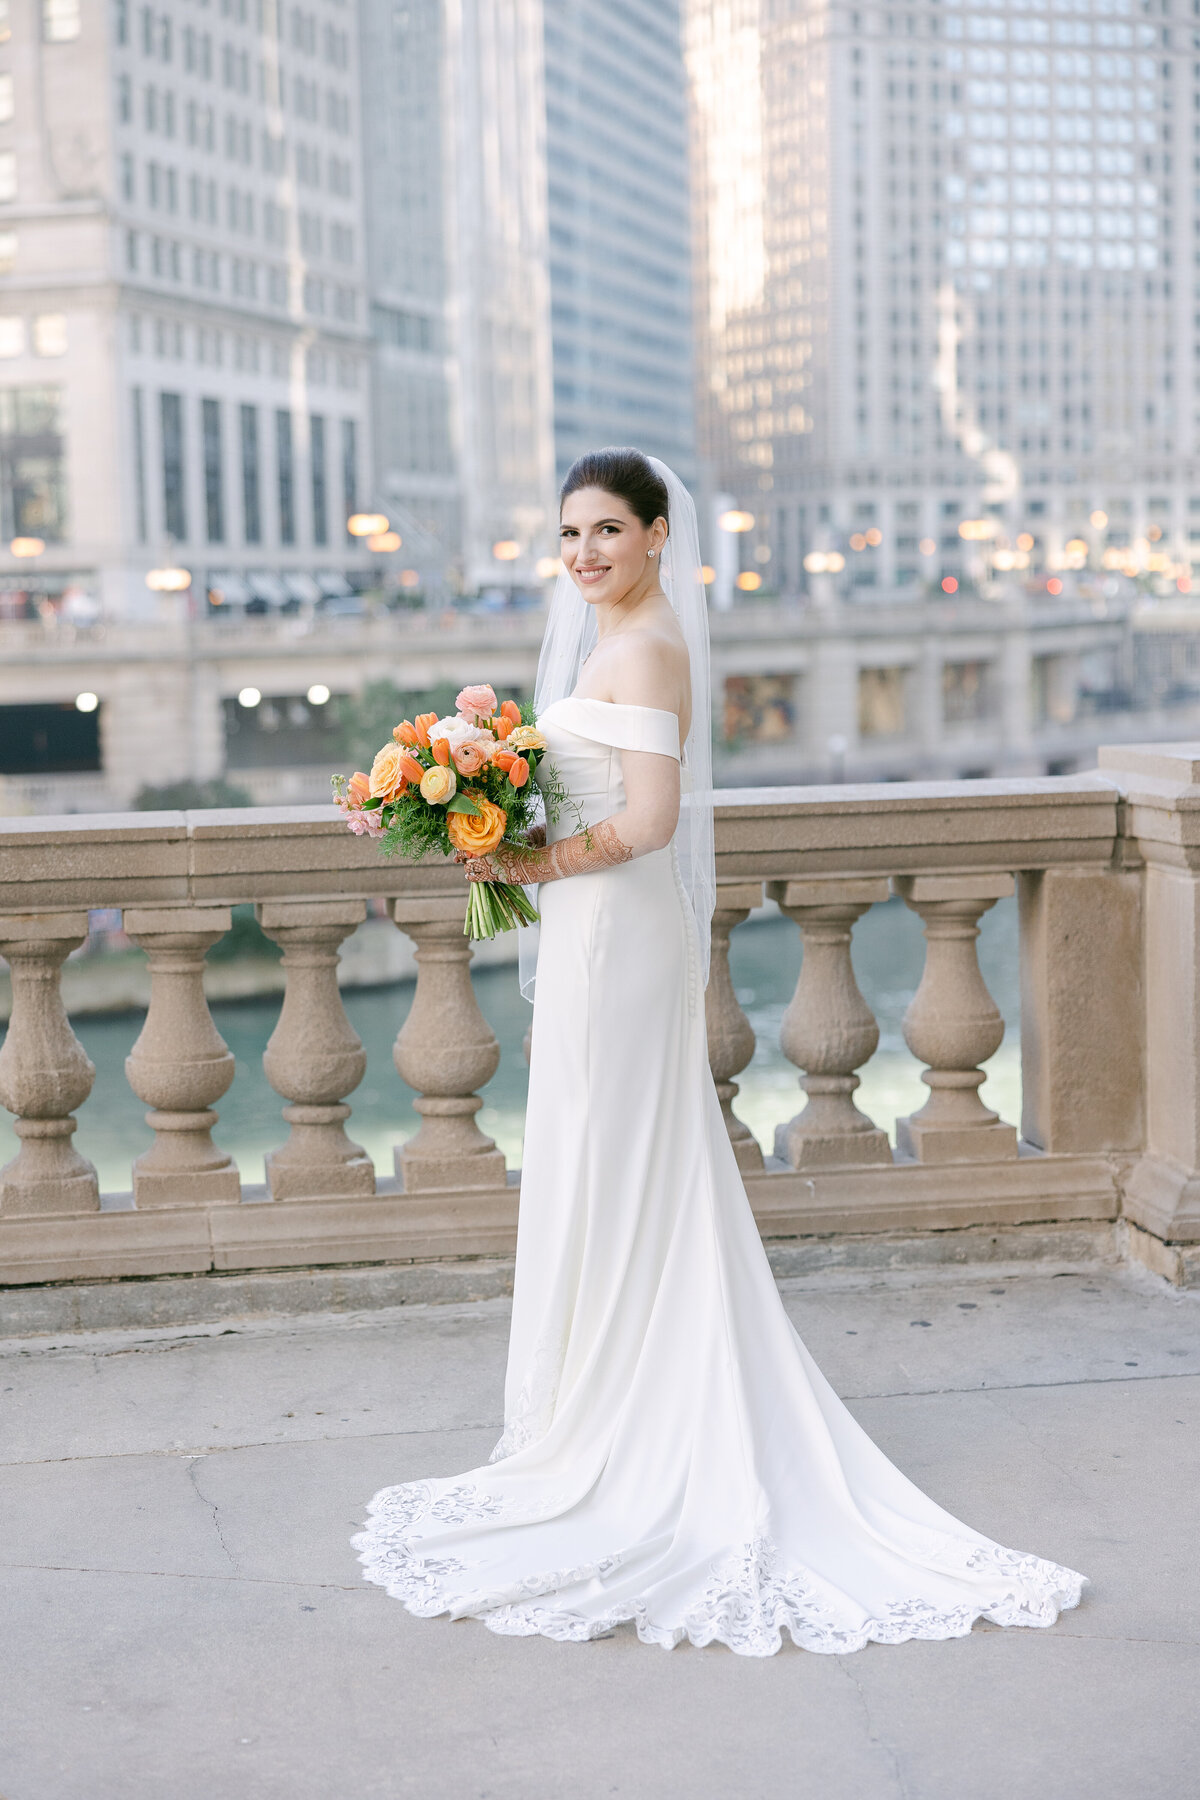 Daniela Cardili Photography Chicago Illinois Wedding Engagement Photographer Timeline Luxury Classic  Destination Worldwide Traveling Travel1620